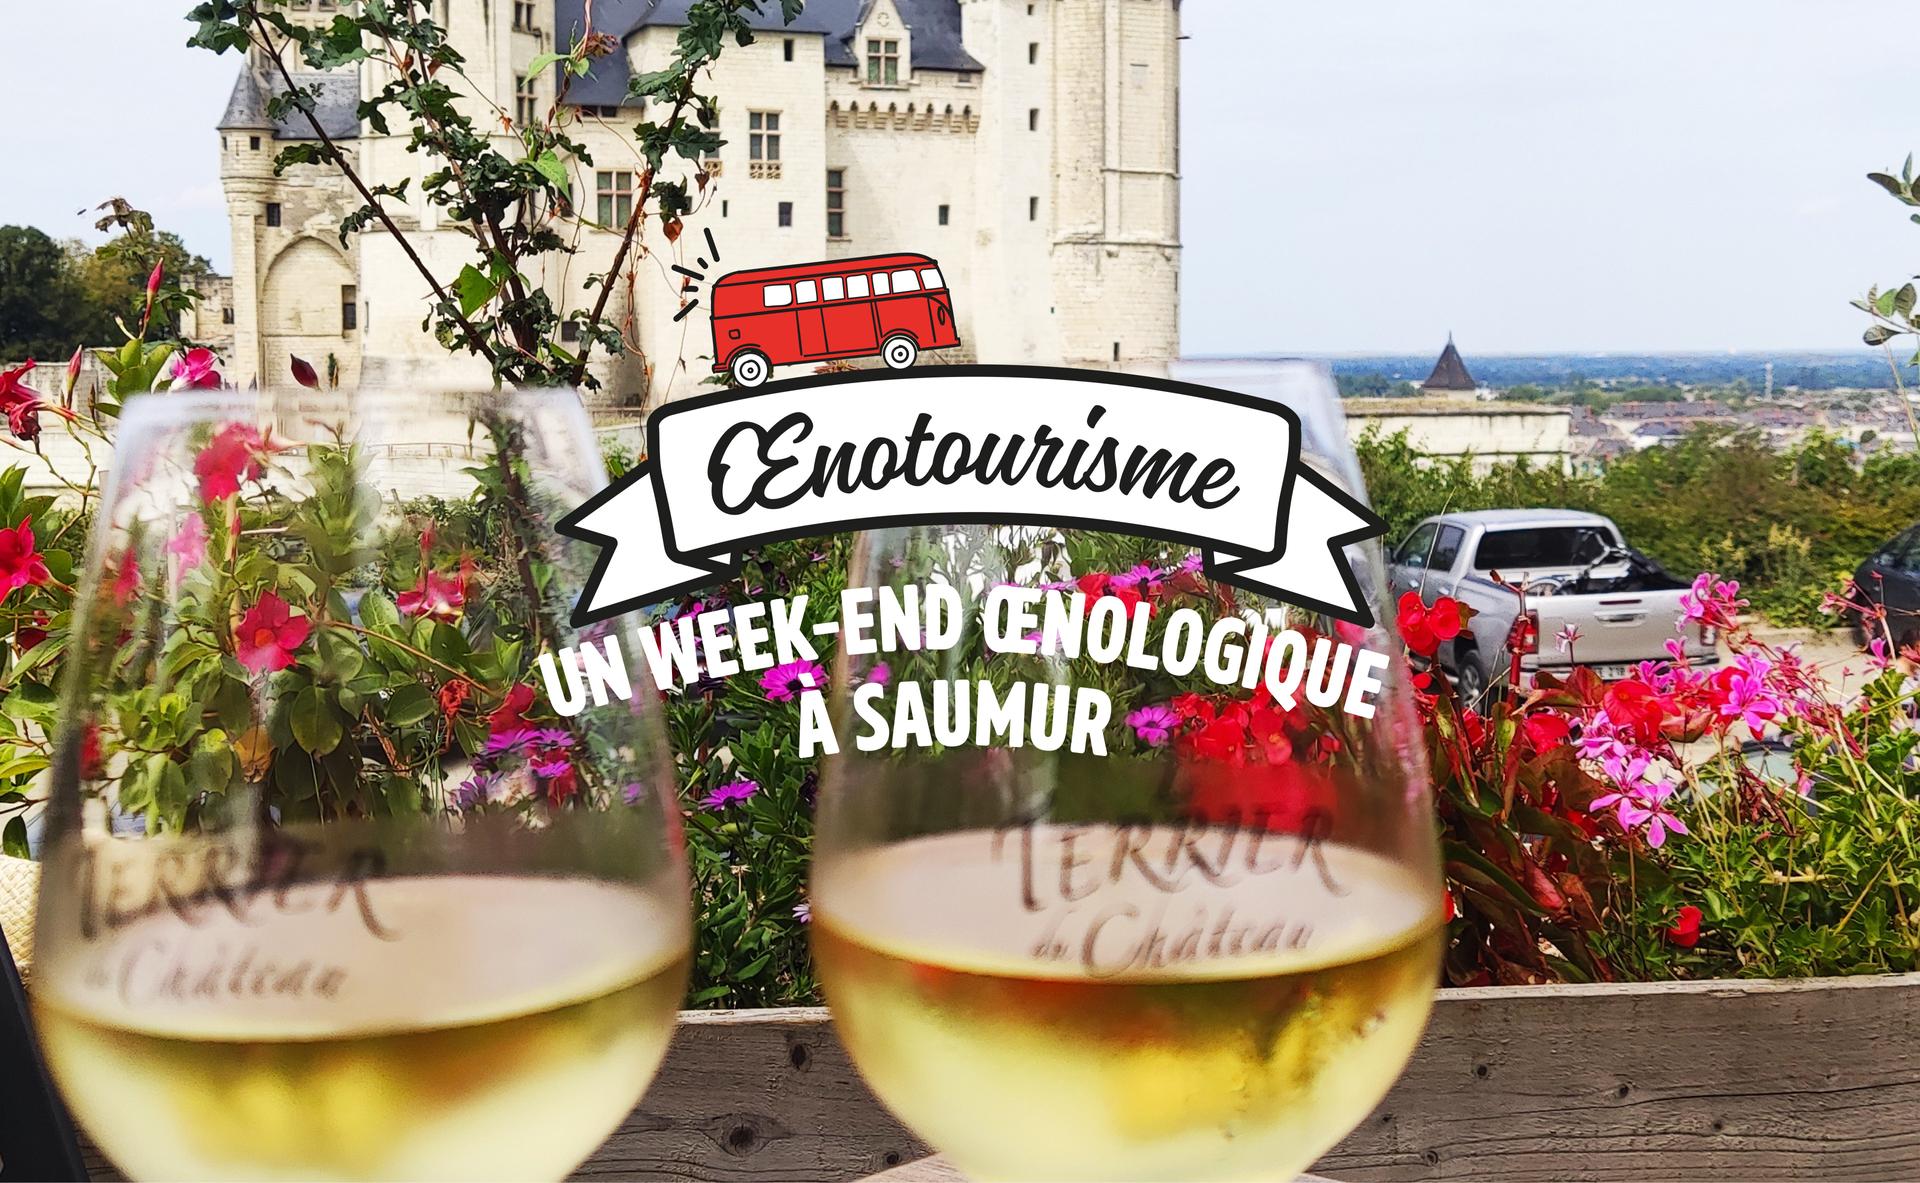 Un week-end œnologique à Saumur